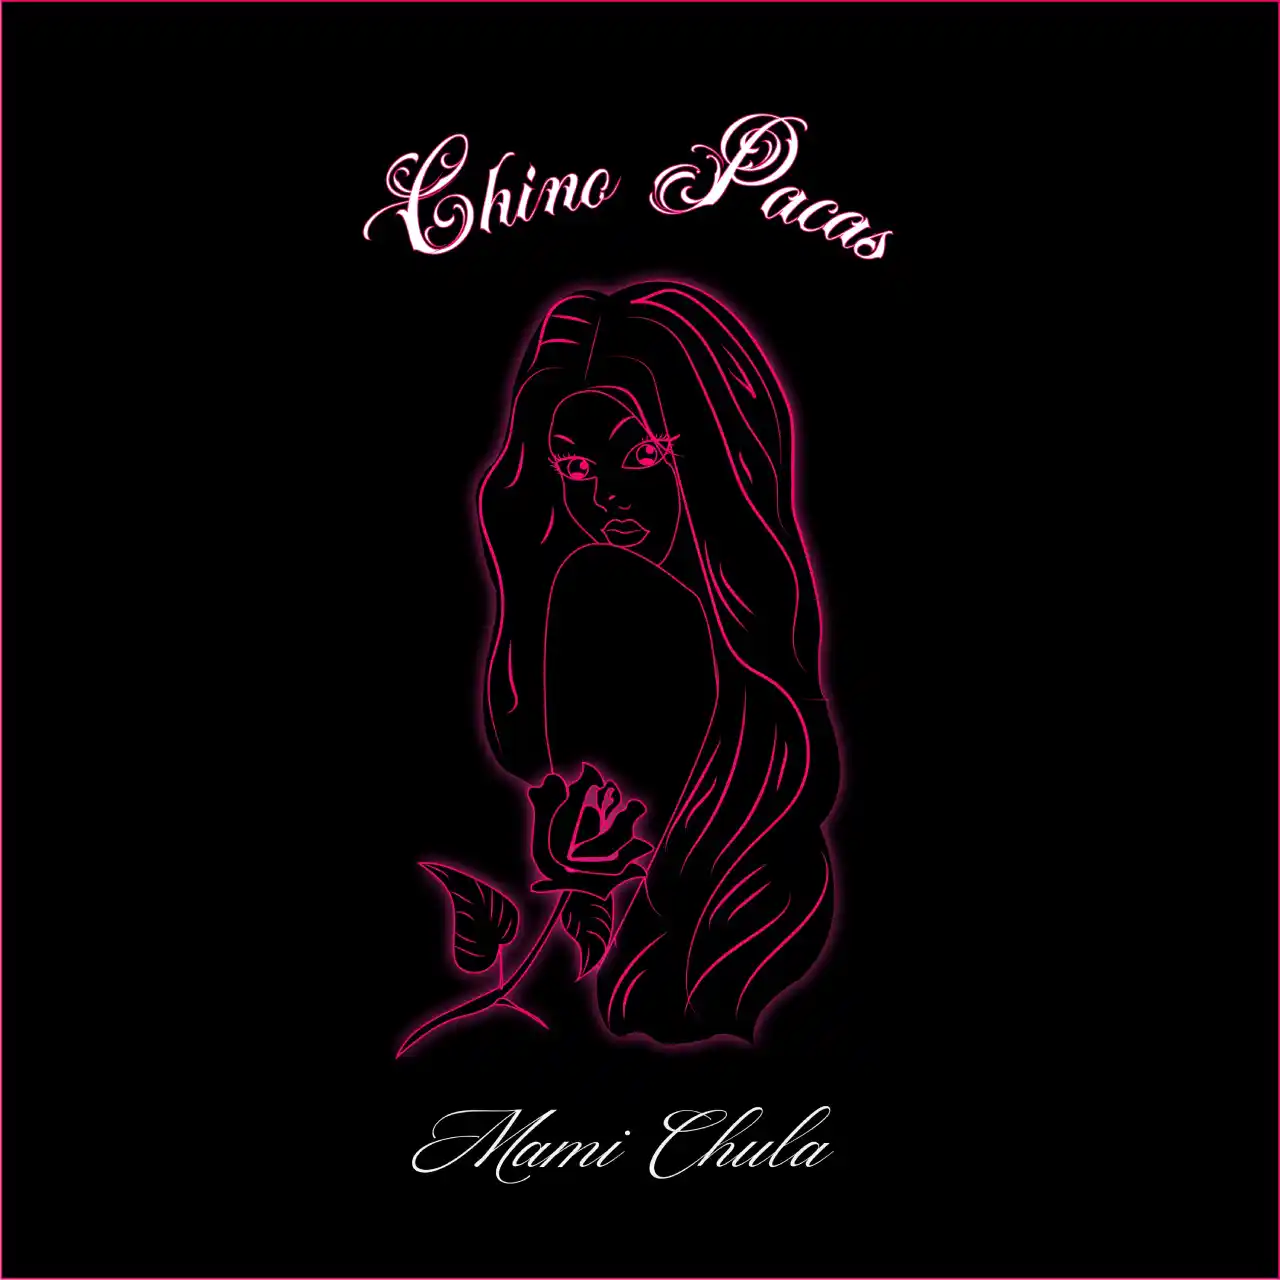 Chino Pacas da una serenata en su nueva canción «Miami chula»